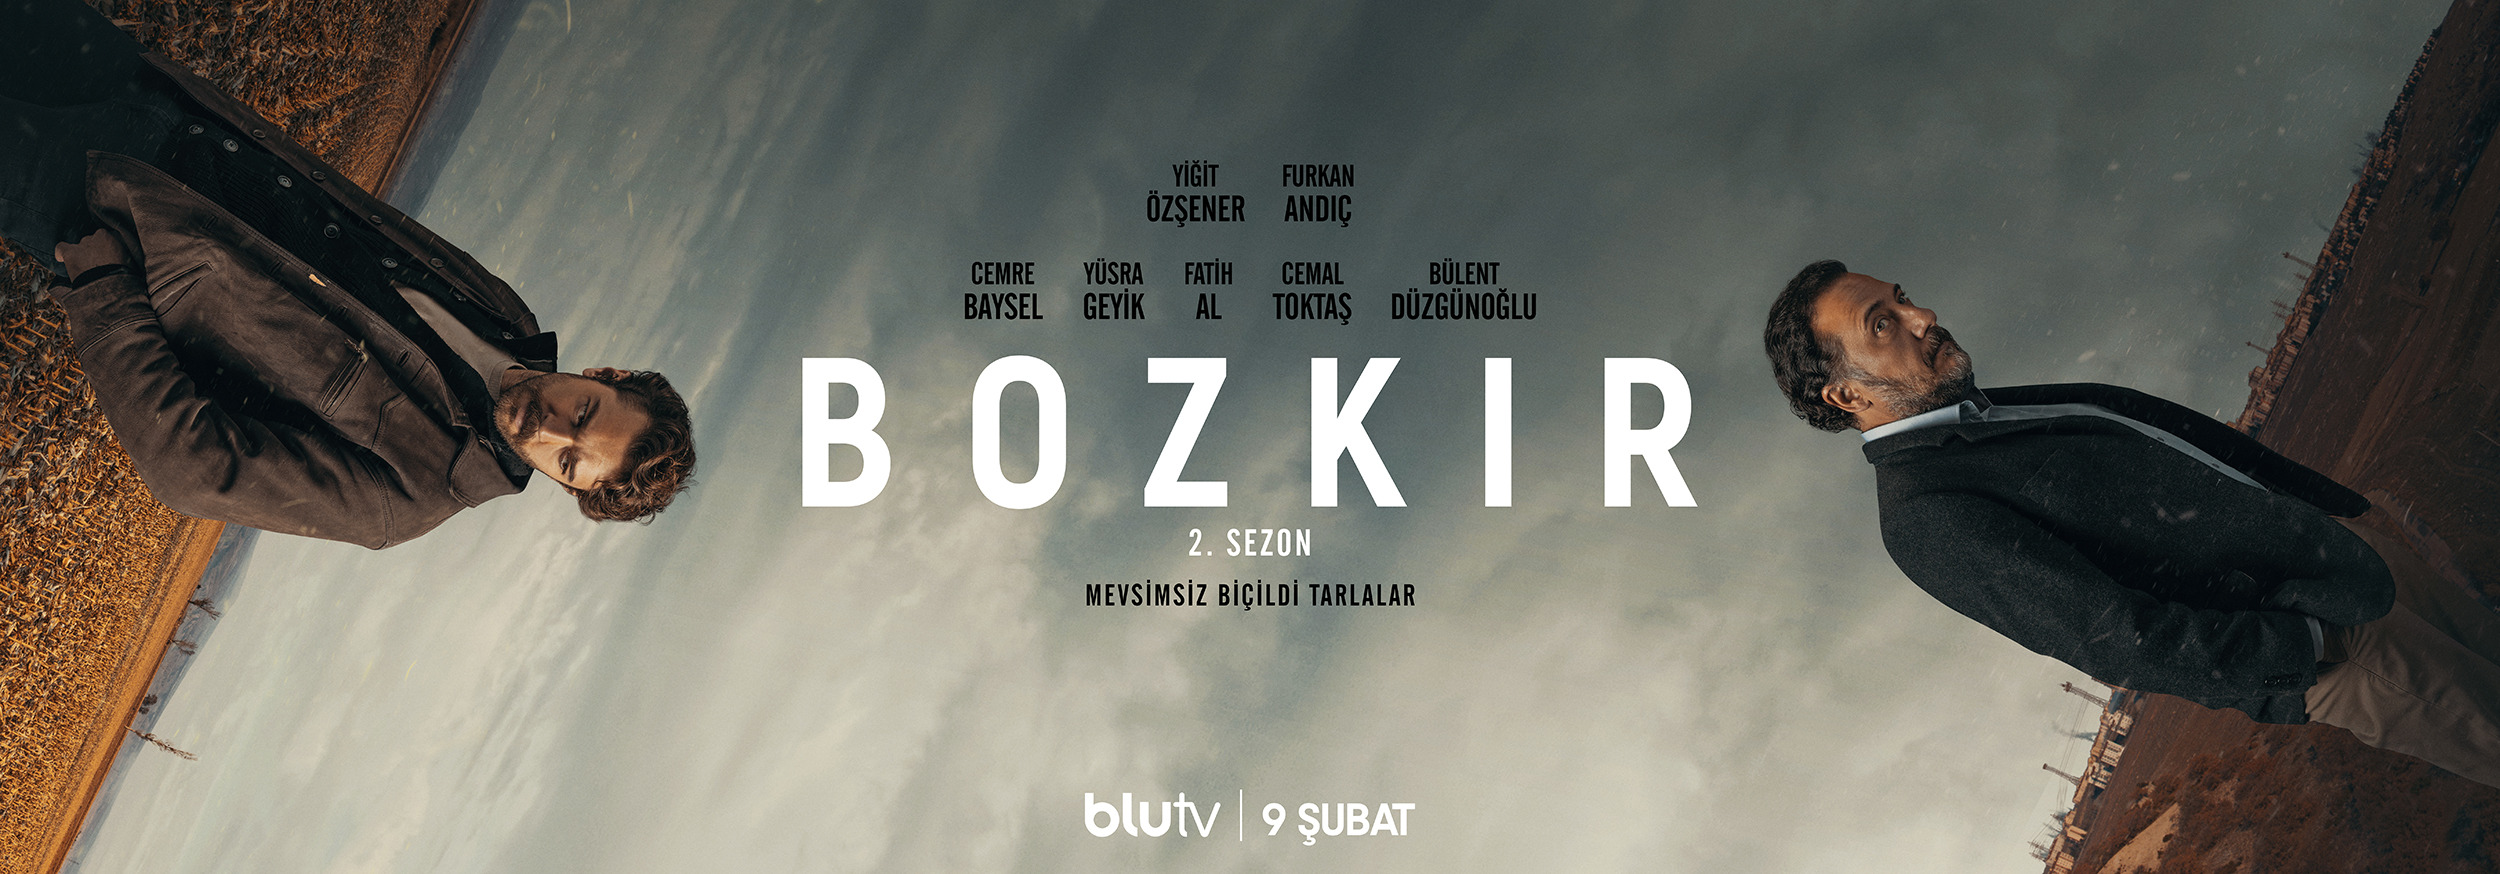 Mega Sized TV Poster Image for Bozkir (#9 of 10)